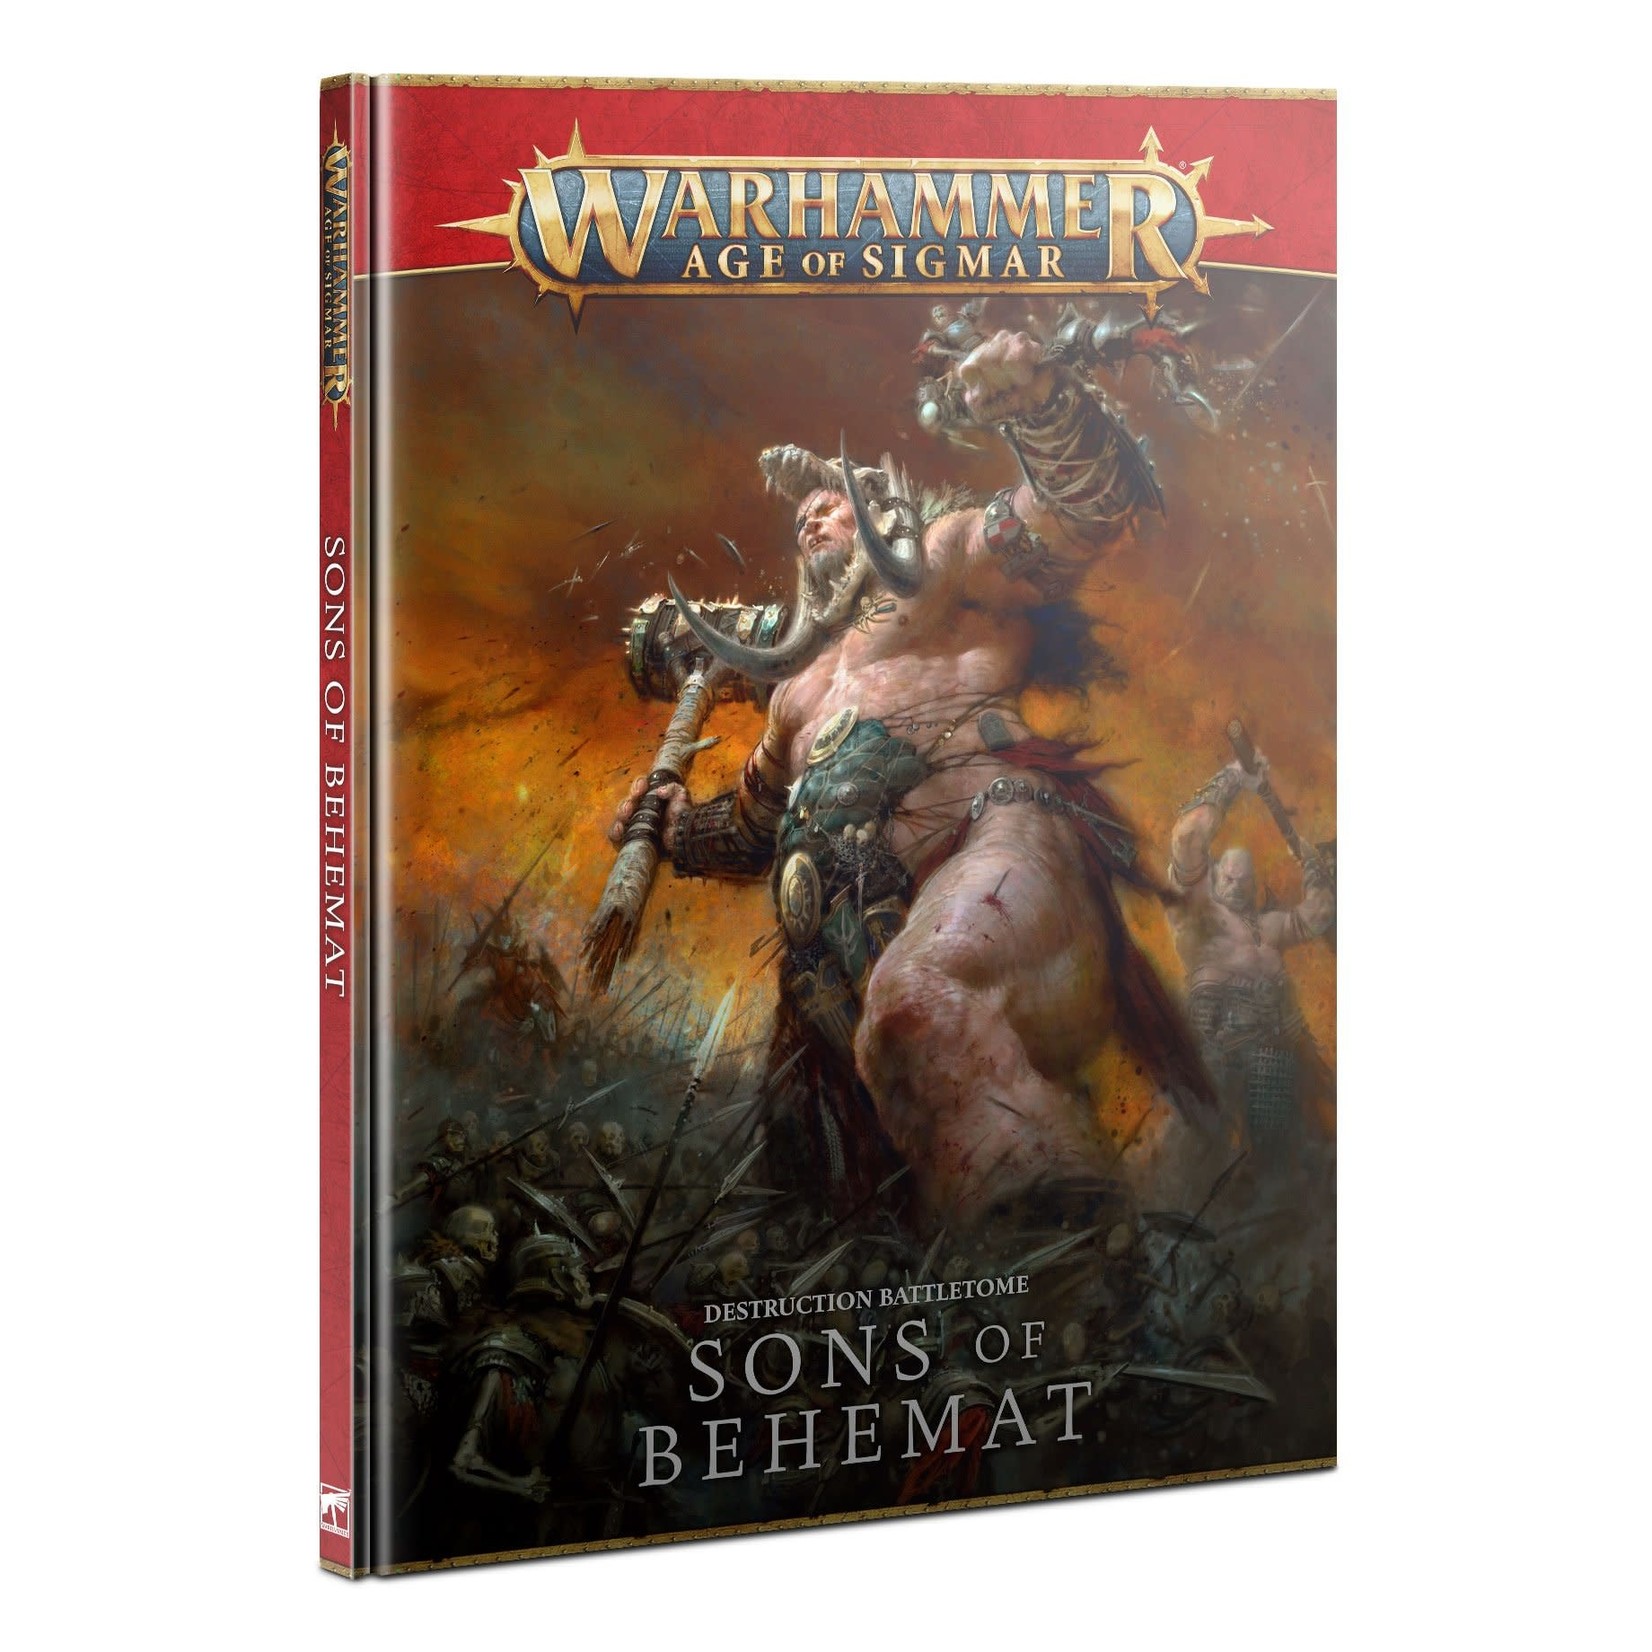 Games Workshop Warhammer Age of Sigmar Battletome Sons of Behemat 3E